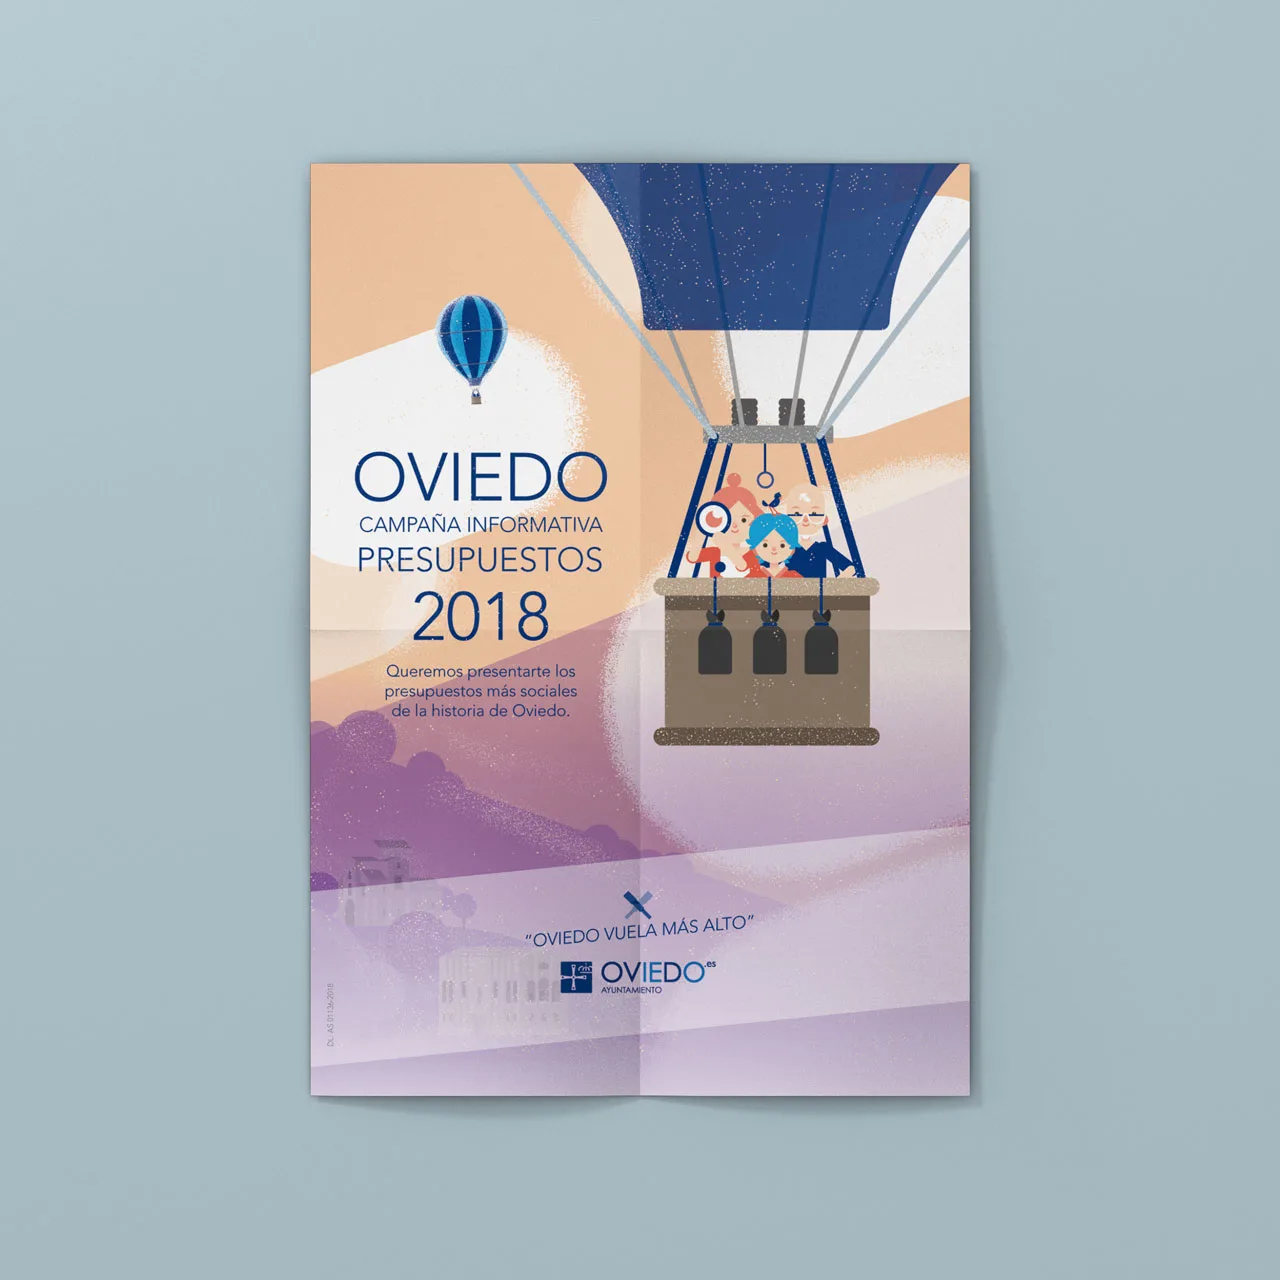 Presupuestos 2018: Oviedo Vuela Más Alto